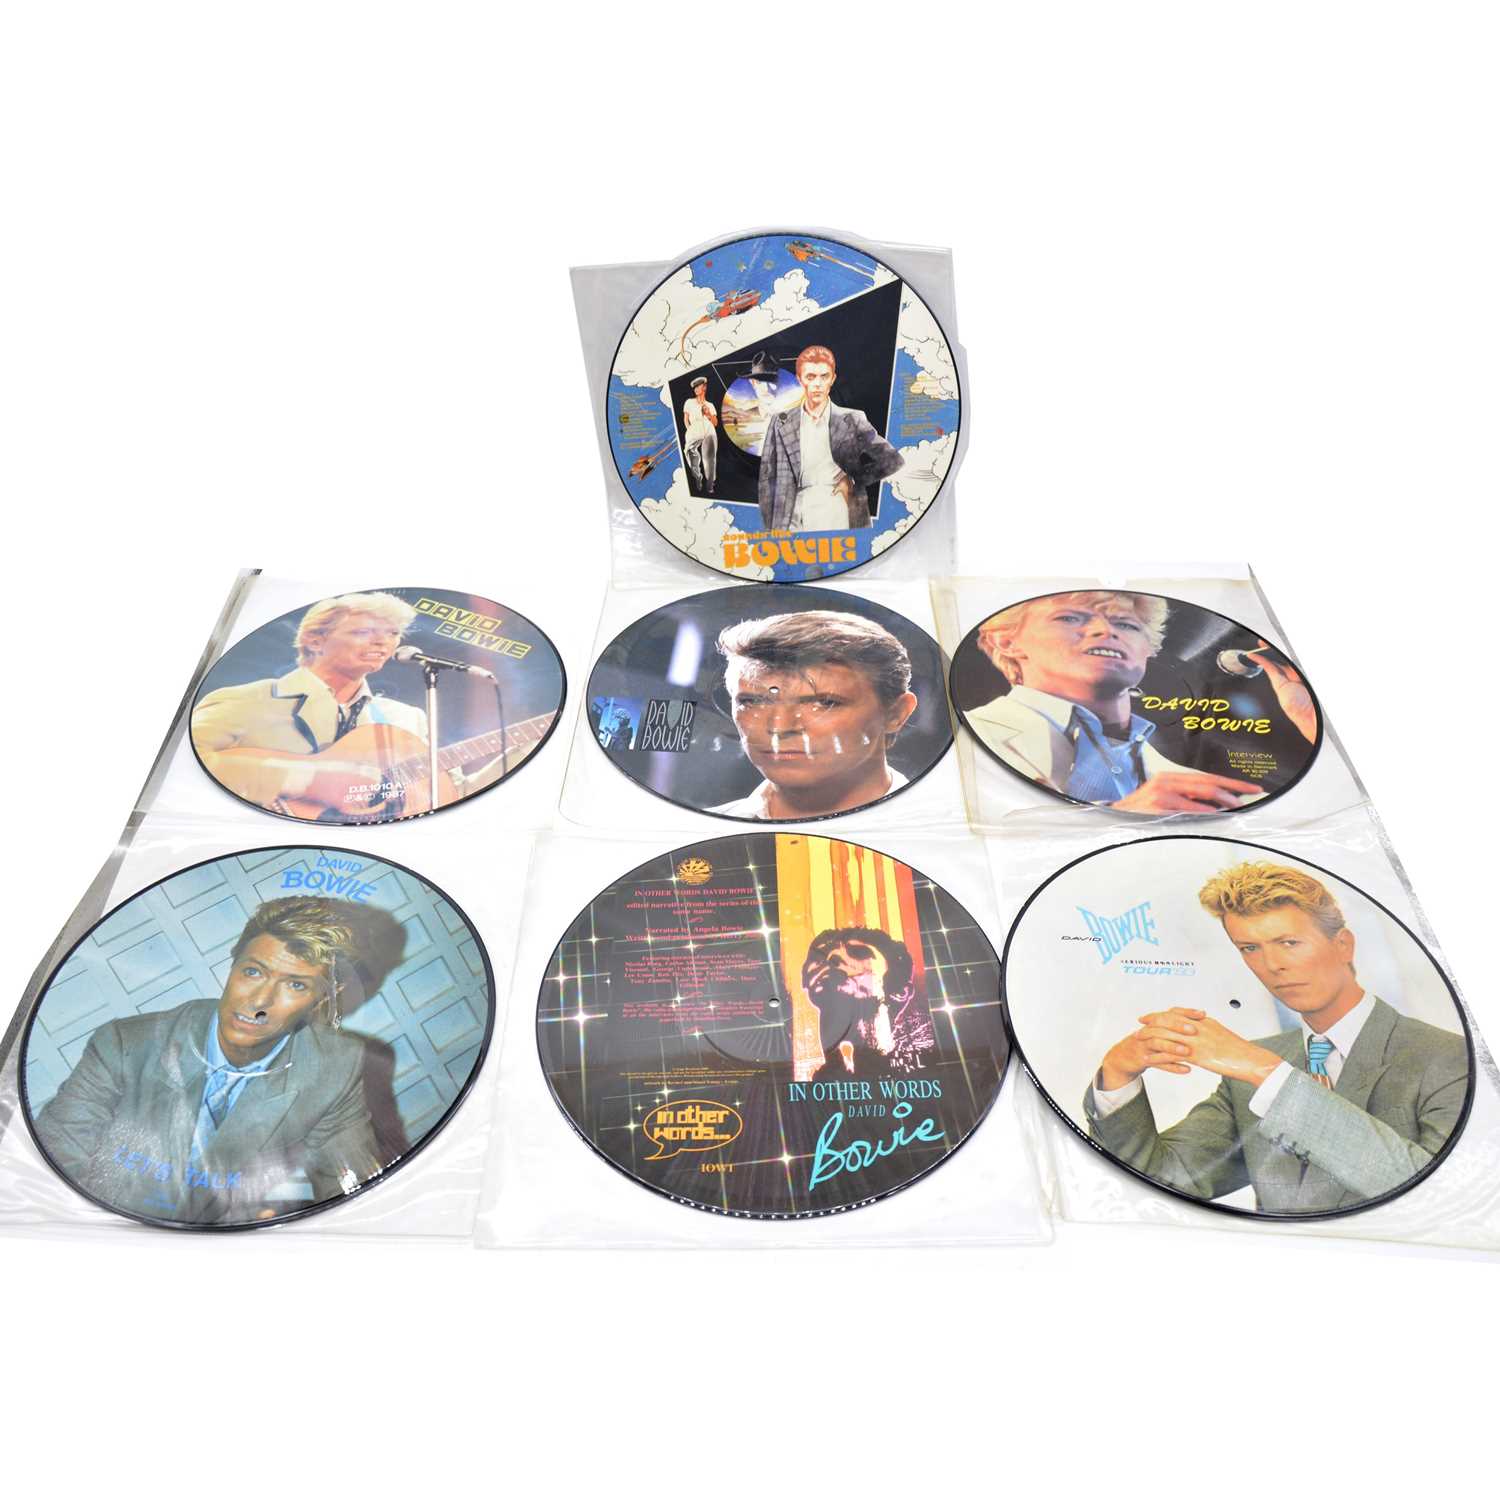 Lot 40 - Seven David Bowie picture disc vinyl records.